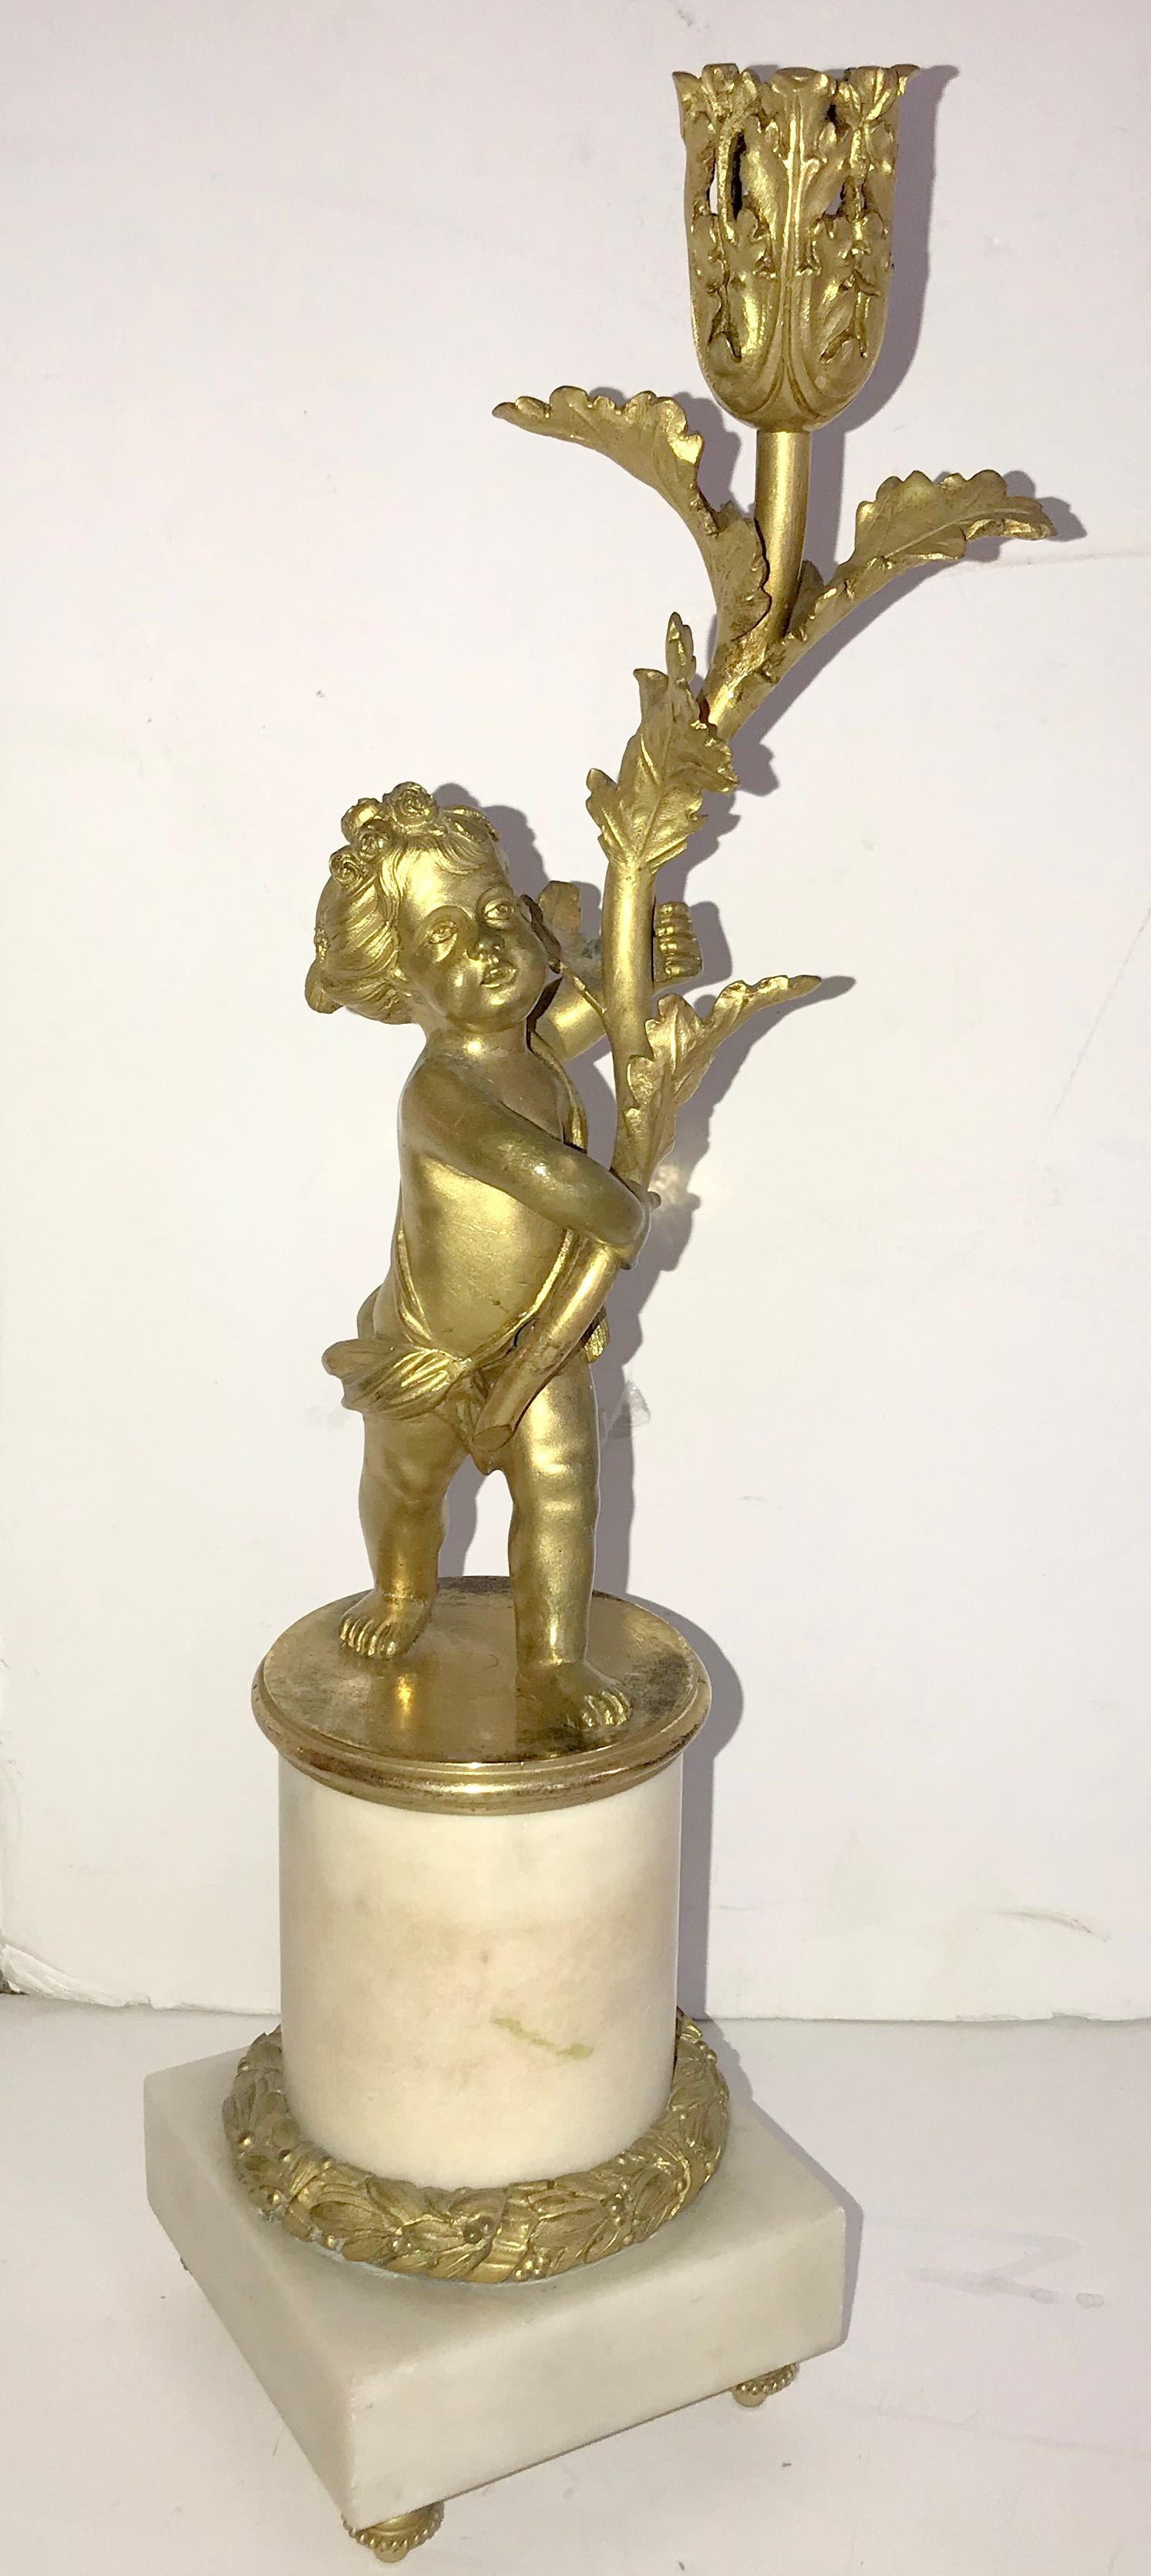 Ein wunderschönes Paar Cherub doré Bronze / putti Figur durchbohrt Kandelaber mit Ormolu Beschläge auf Marmorsockel erhöht.